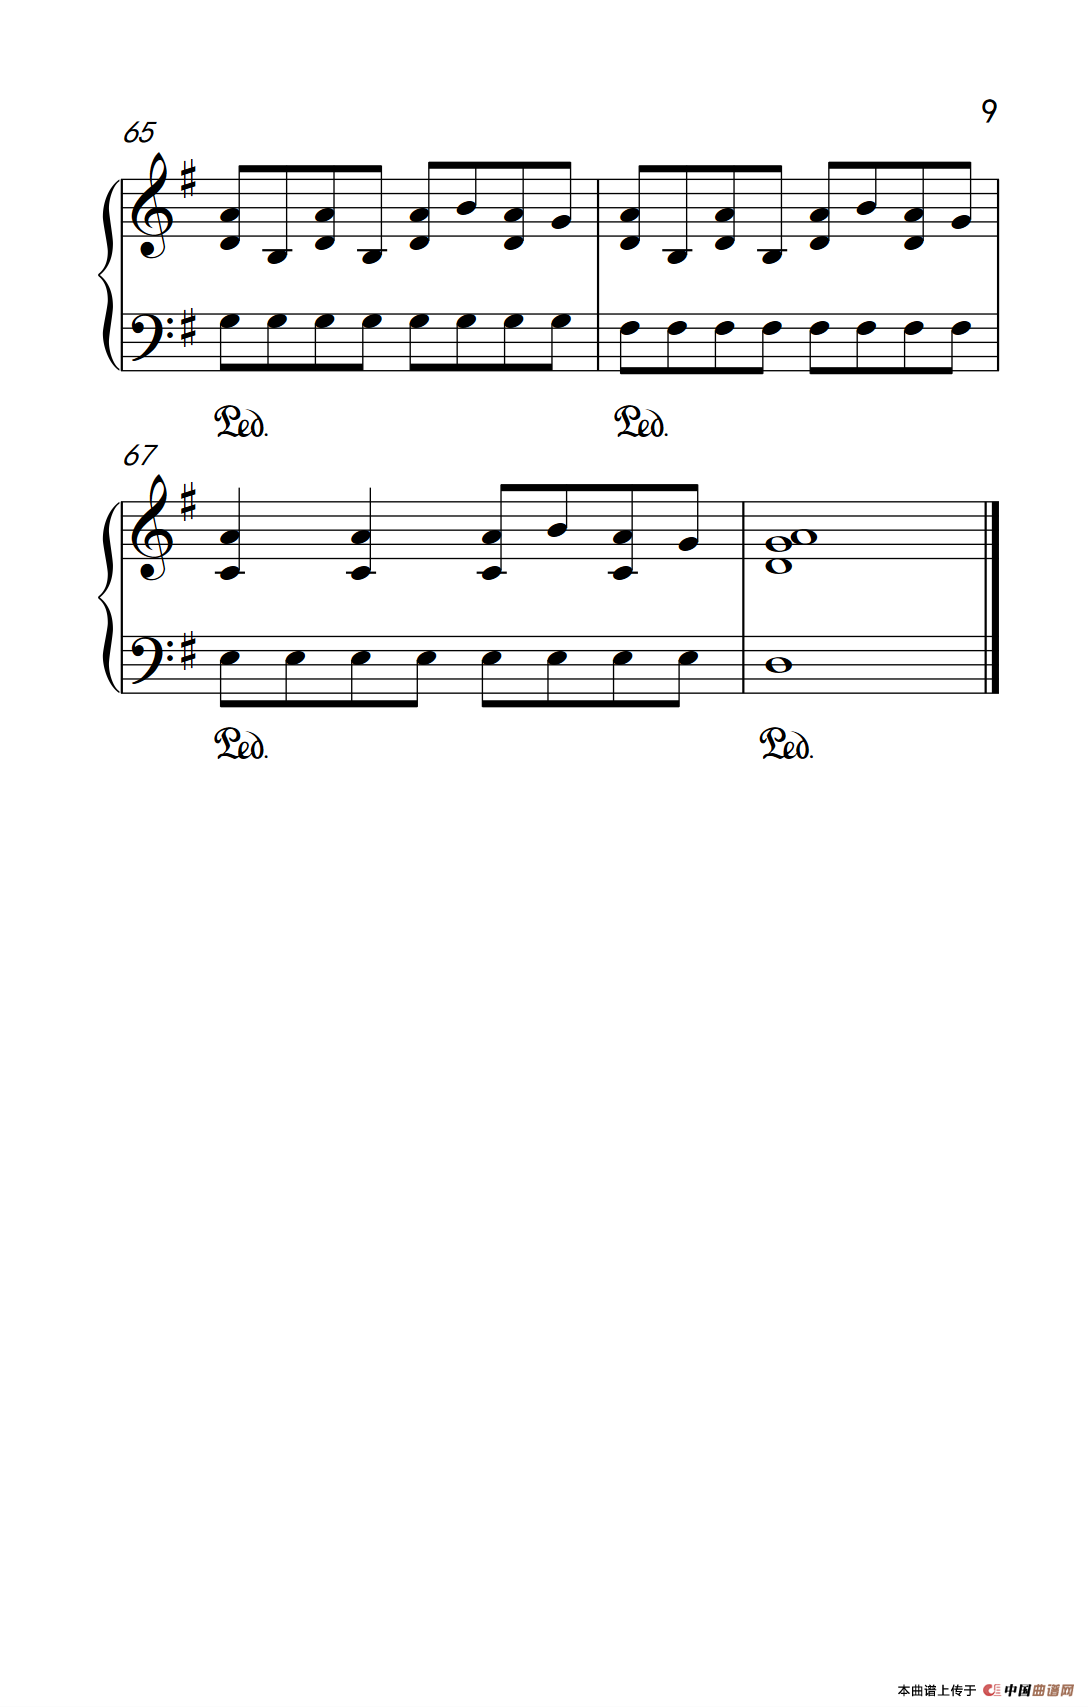 《掉了》钢琴曲谱图分享